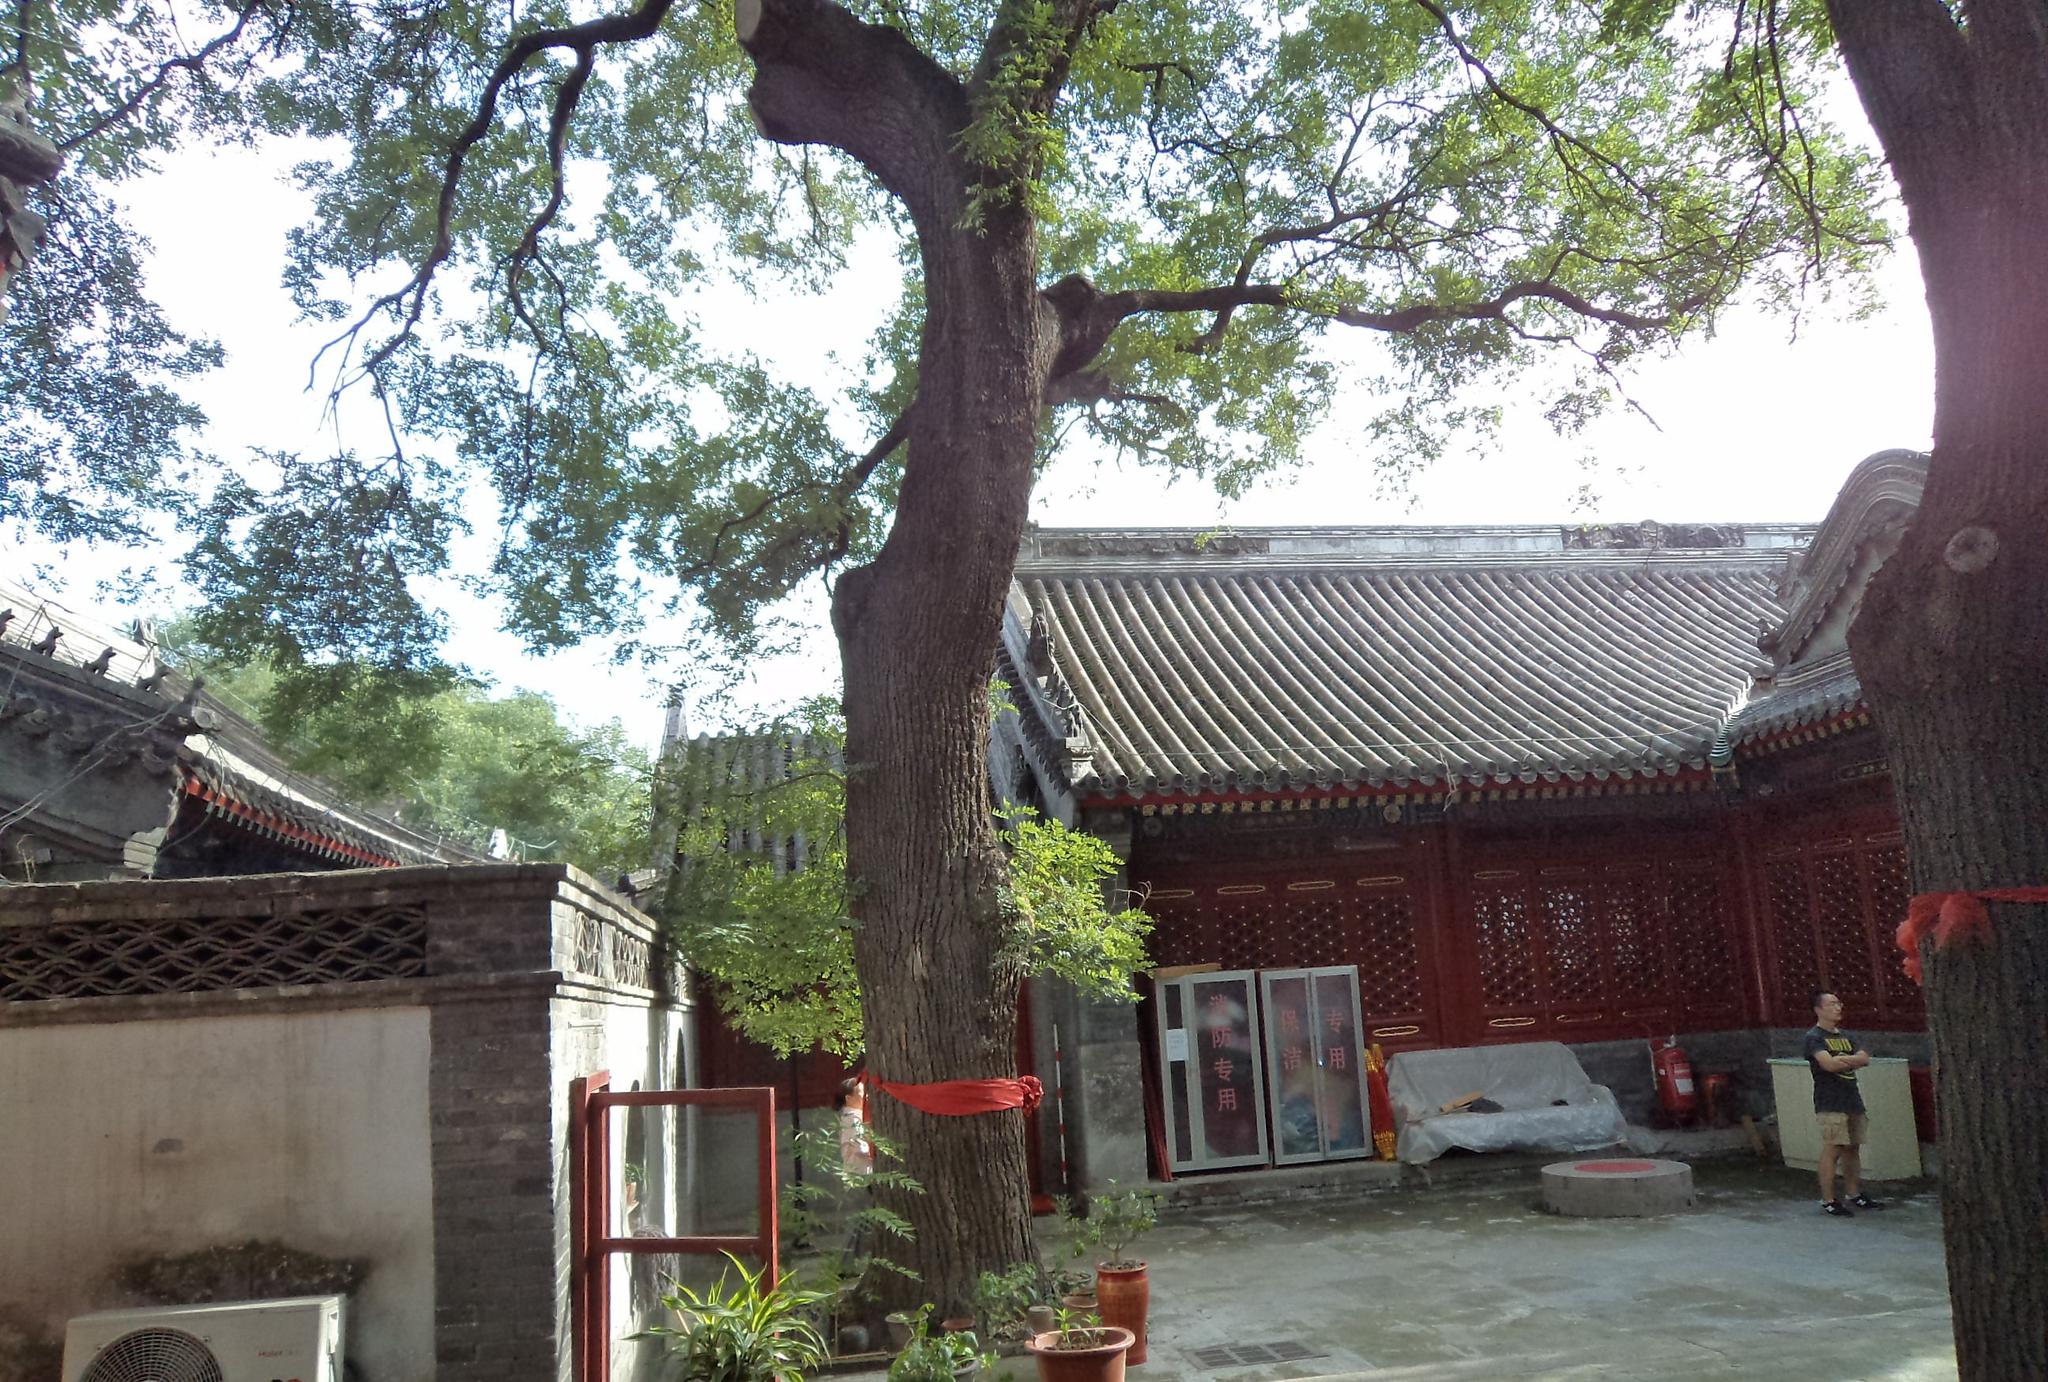 先建的悯忠寺后建的北京城-建筑-服务器里的北京 - 老北京网 - BY Old BeiJing!